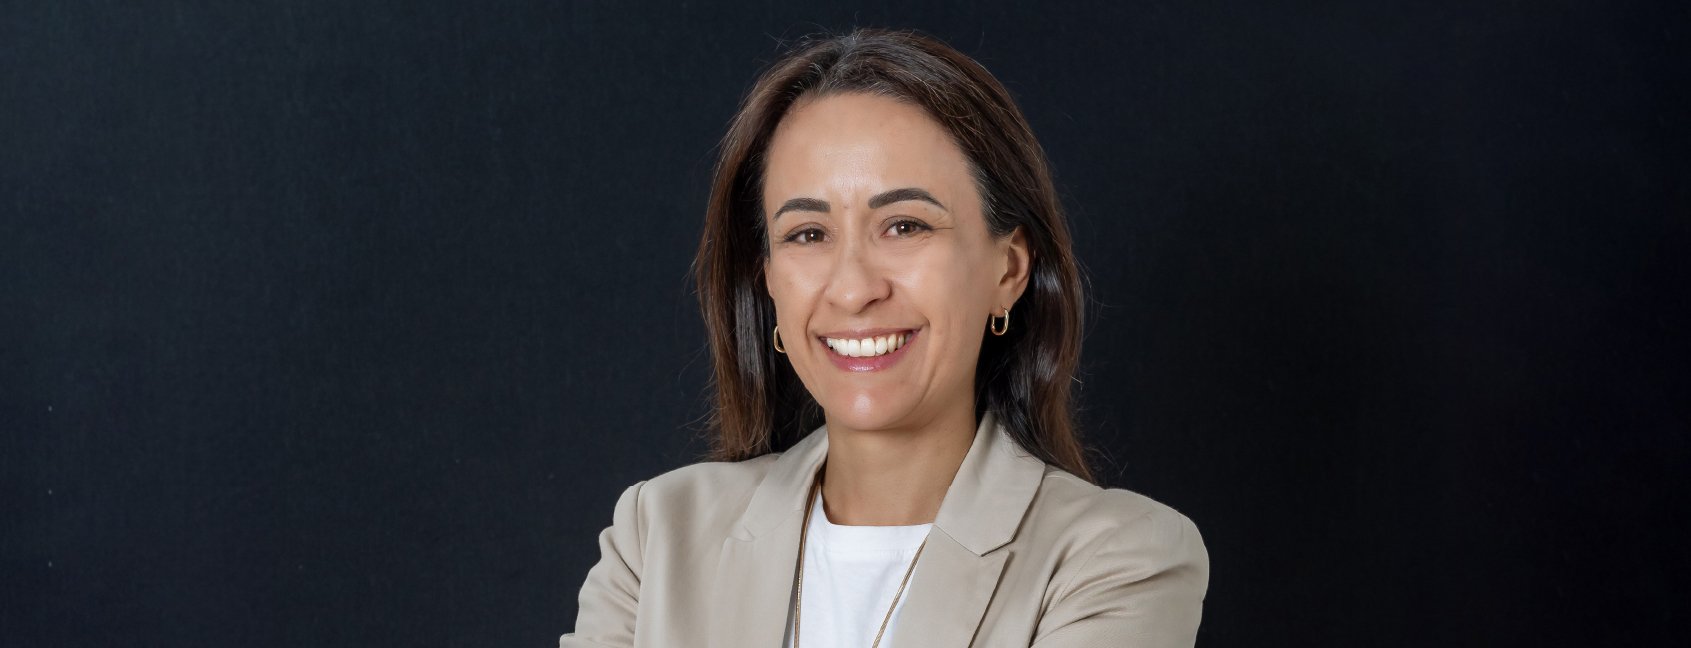 María Gabriela Moncayo, nova Diretora Sênior de Assuntos Públicos da LLYC no Equador